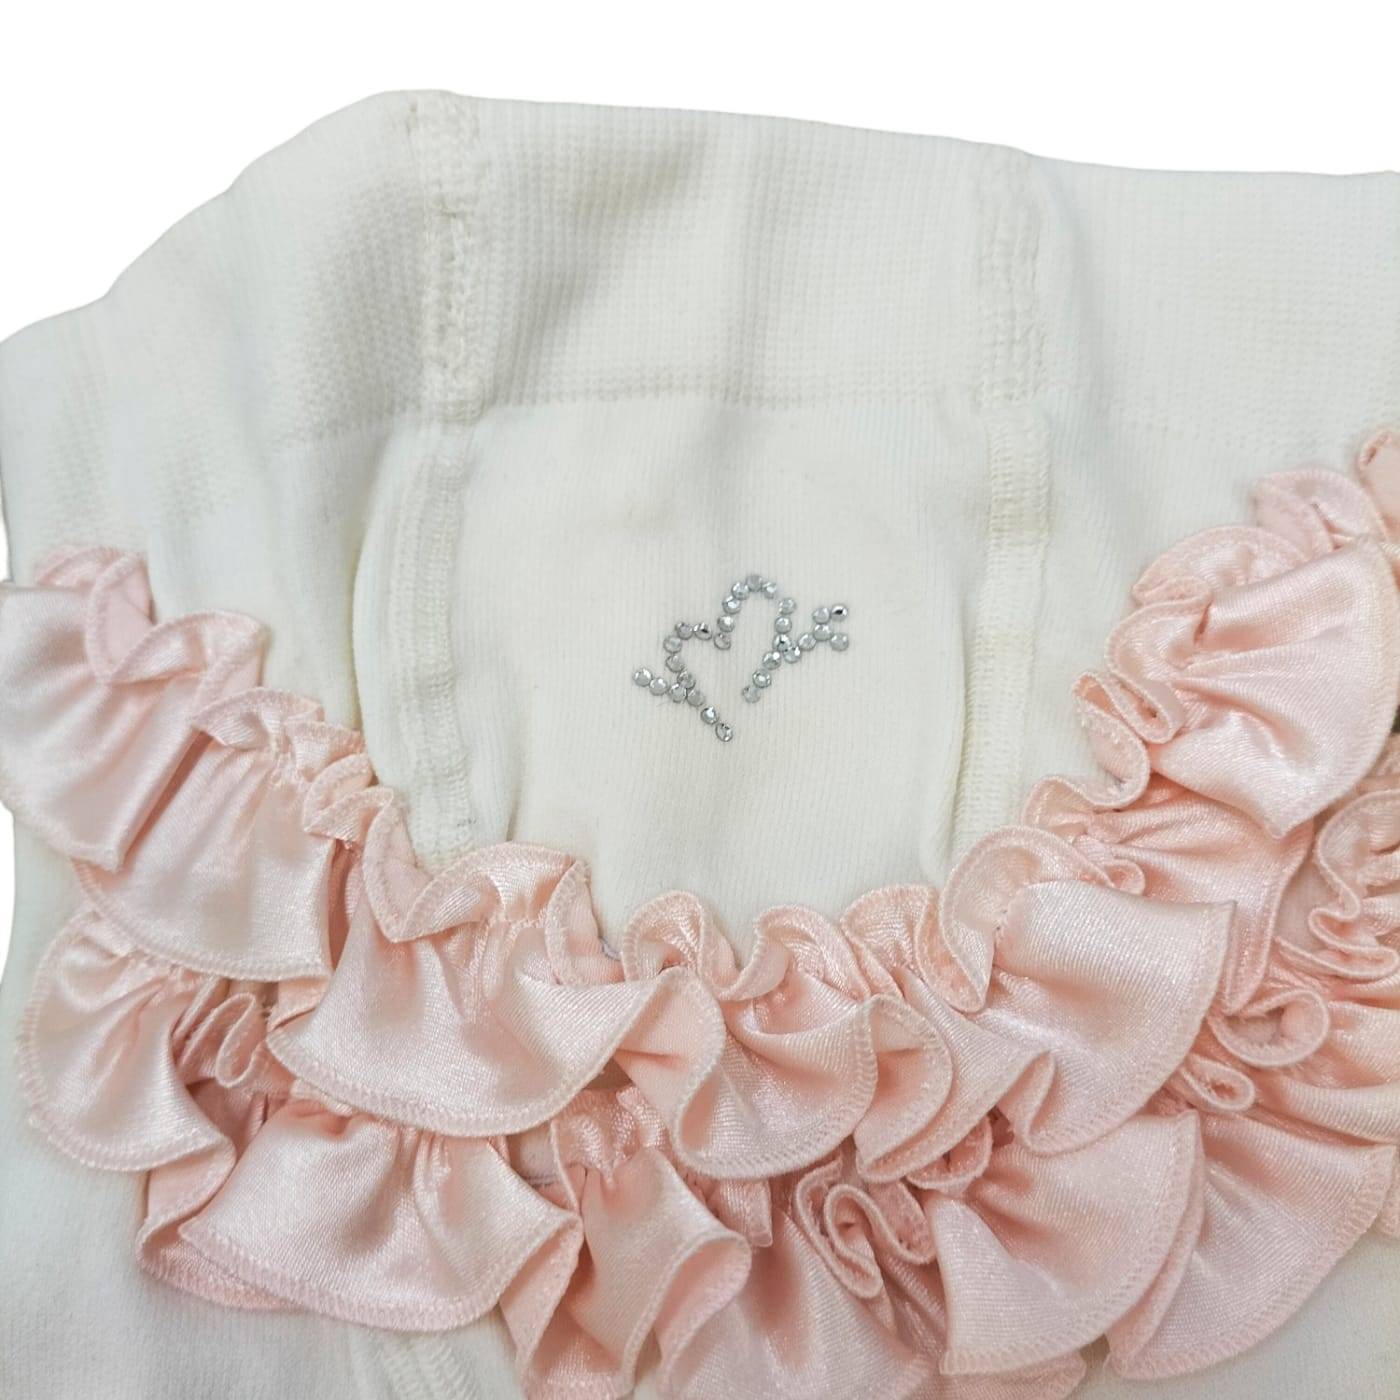 Elegantes leotardos de lycra para bebé niña 0/3 meses Minù crema y rosa